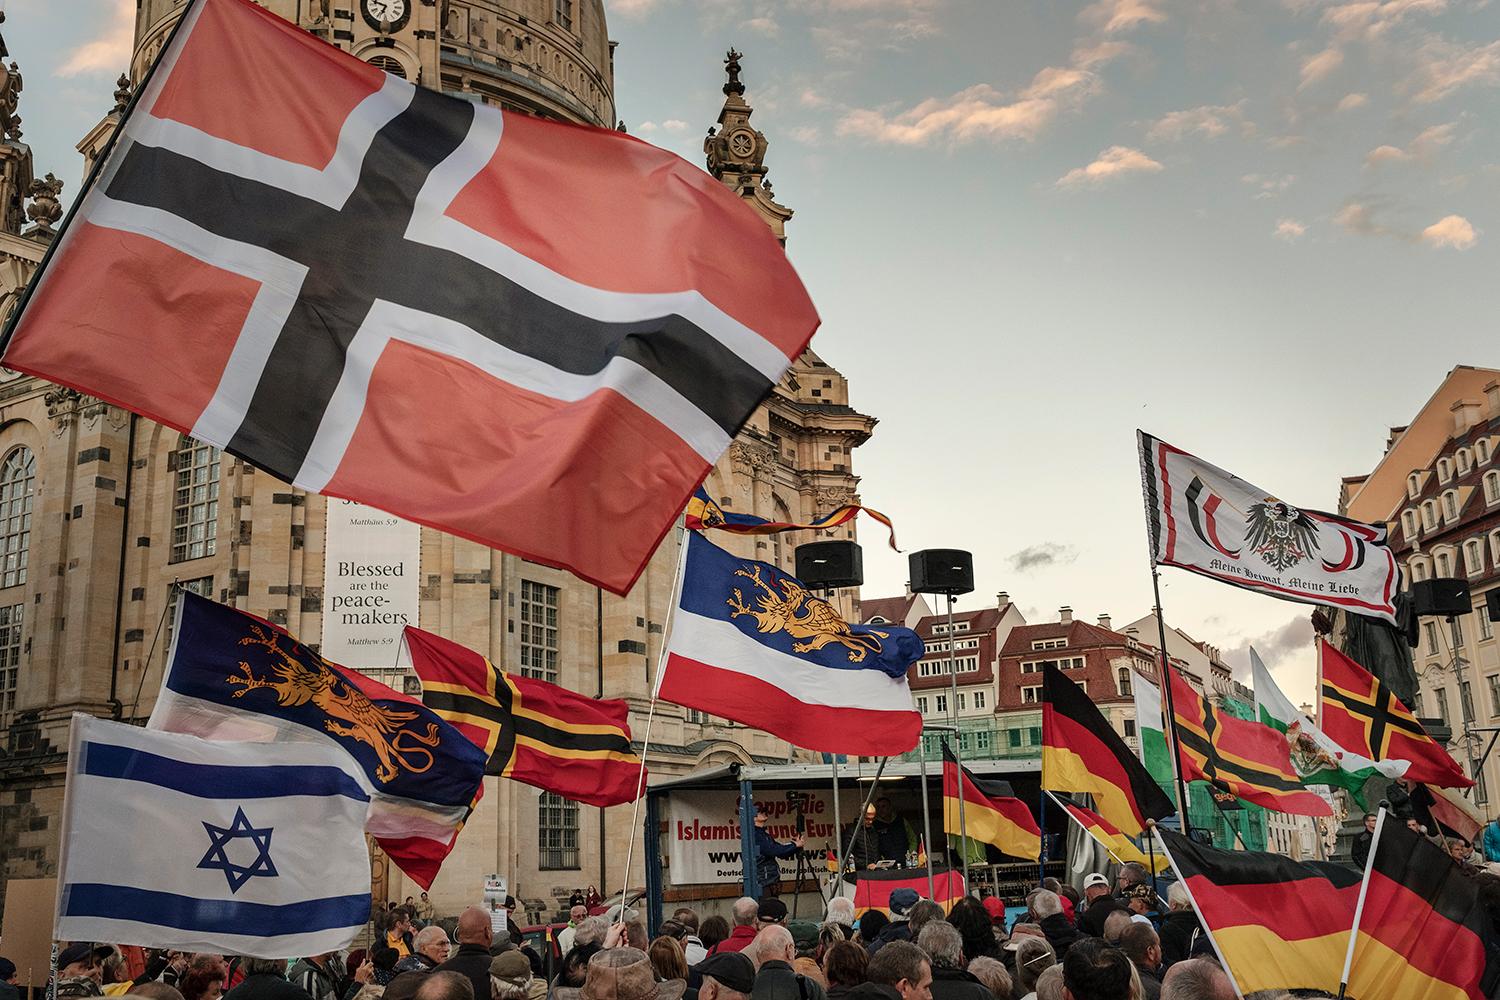 Demonštranti mávajú vlajkami rôznych štátov a nemeckých krajov. Na pódiu rečnia čelní predstavitelia nacionalistického hnutia Pegida.